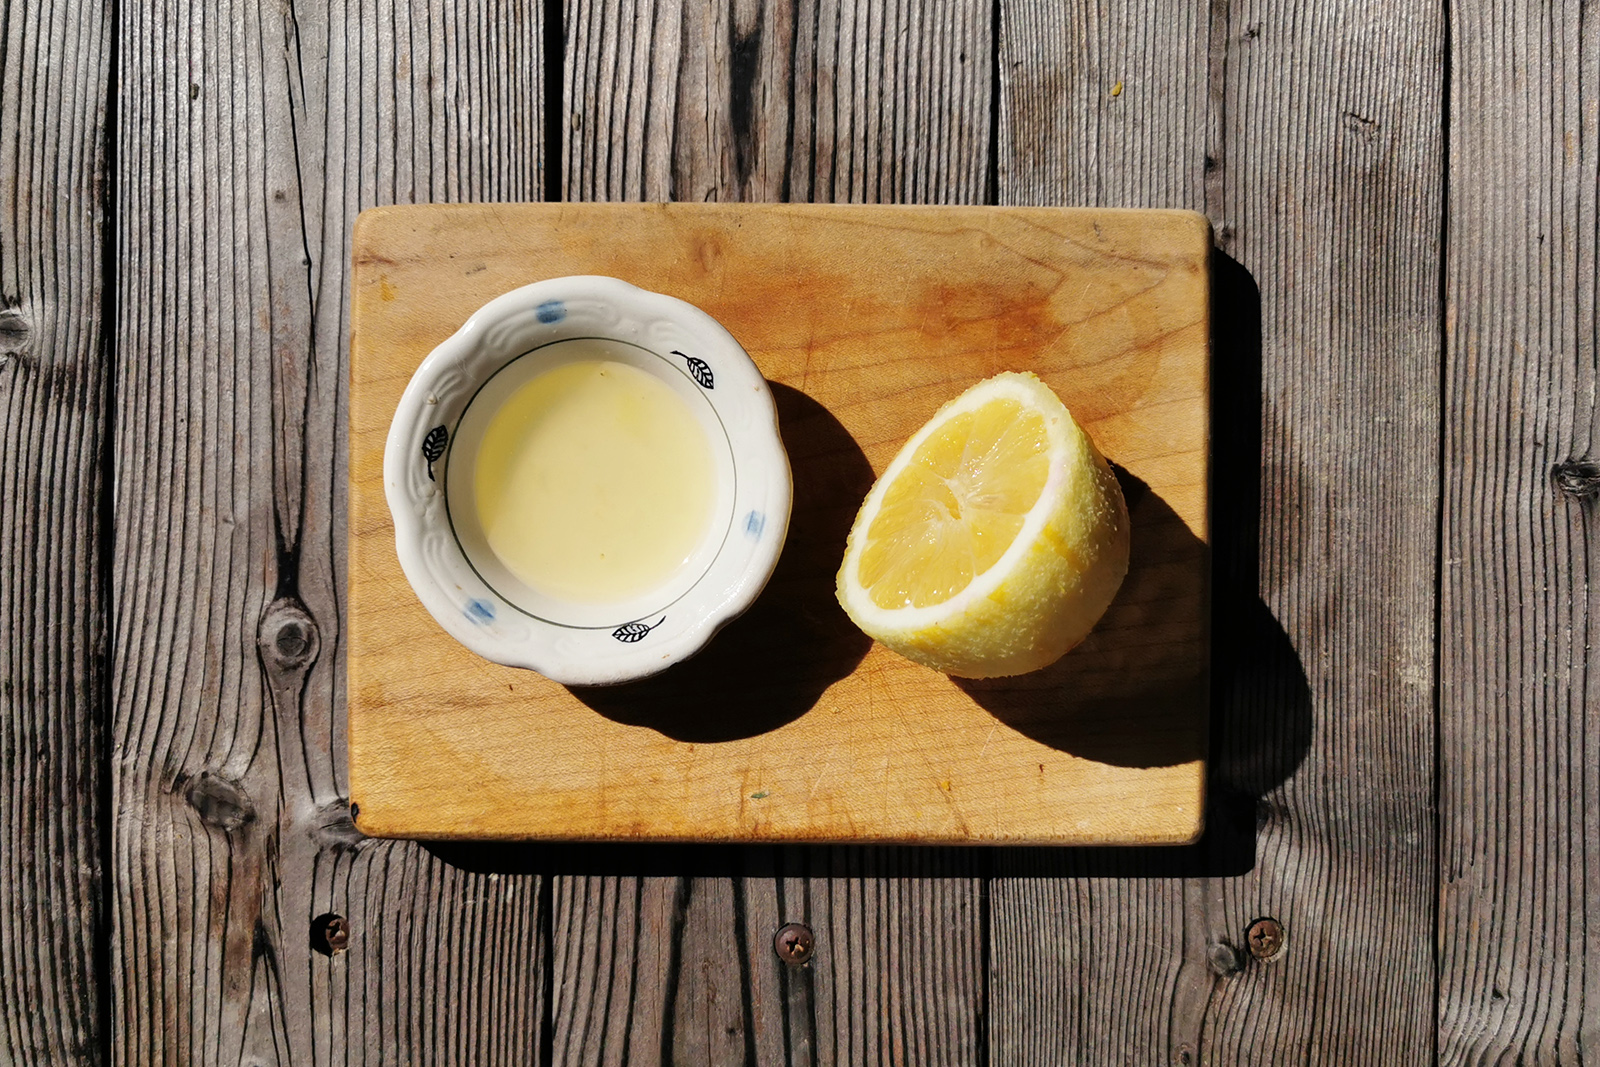 Лимонный сок придает верхнему слою приятную кислинку